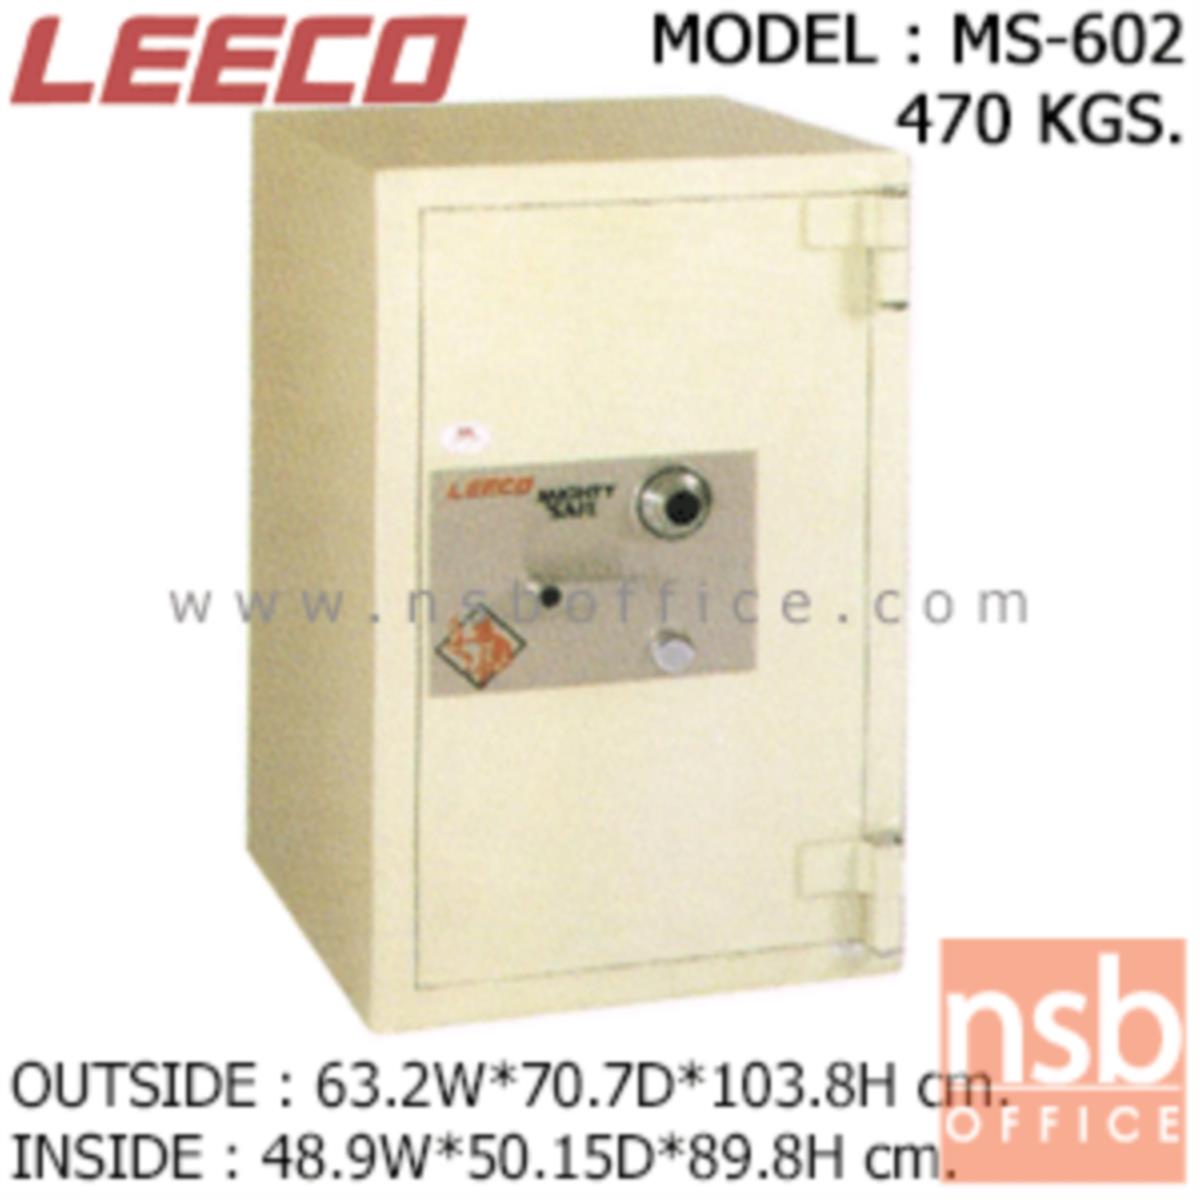 ตู้เซฟนิรภัย 470 กก. ลีโก้ รุ่น LEECO-MS-602 มี 1 กุญแจ 1 รหัส (เปลี่ยนรหัสไม่ได้)   